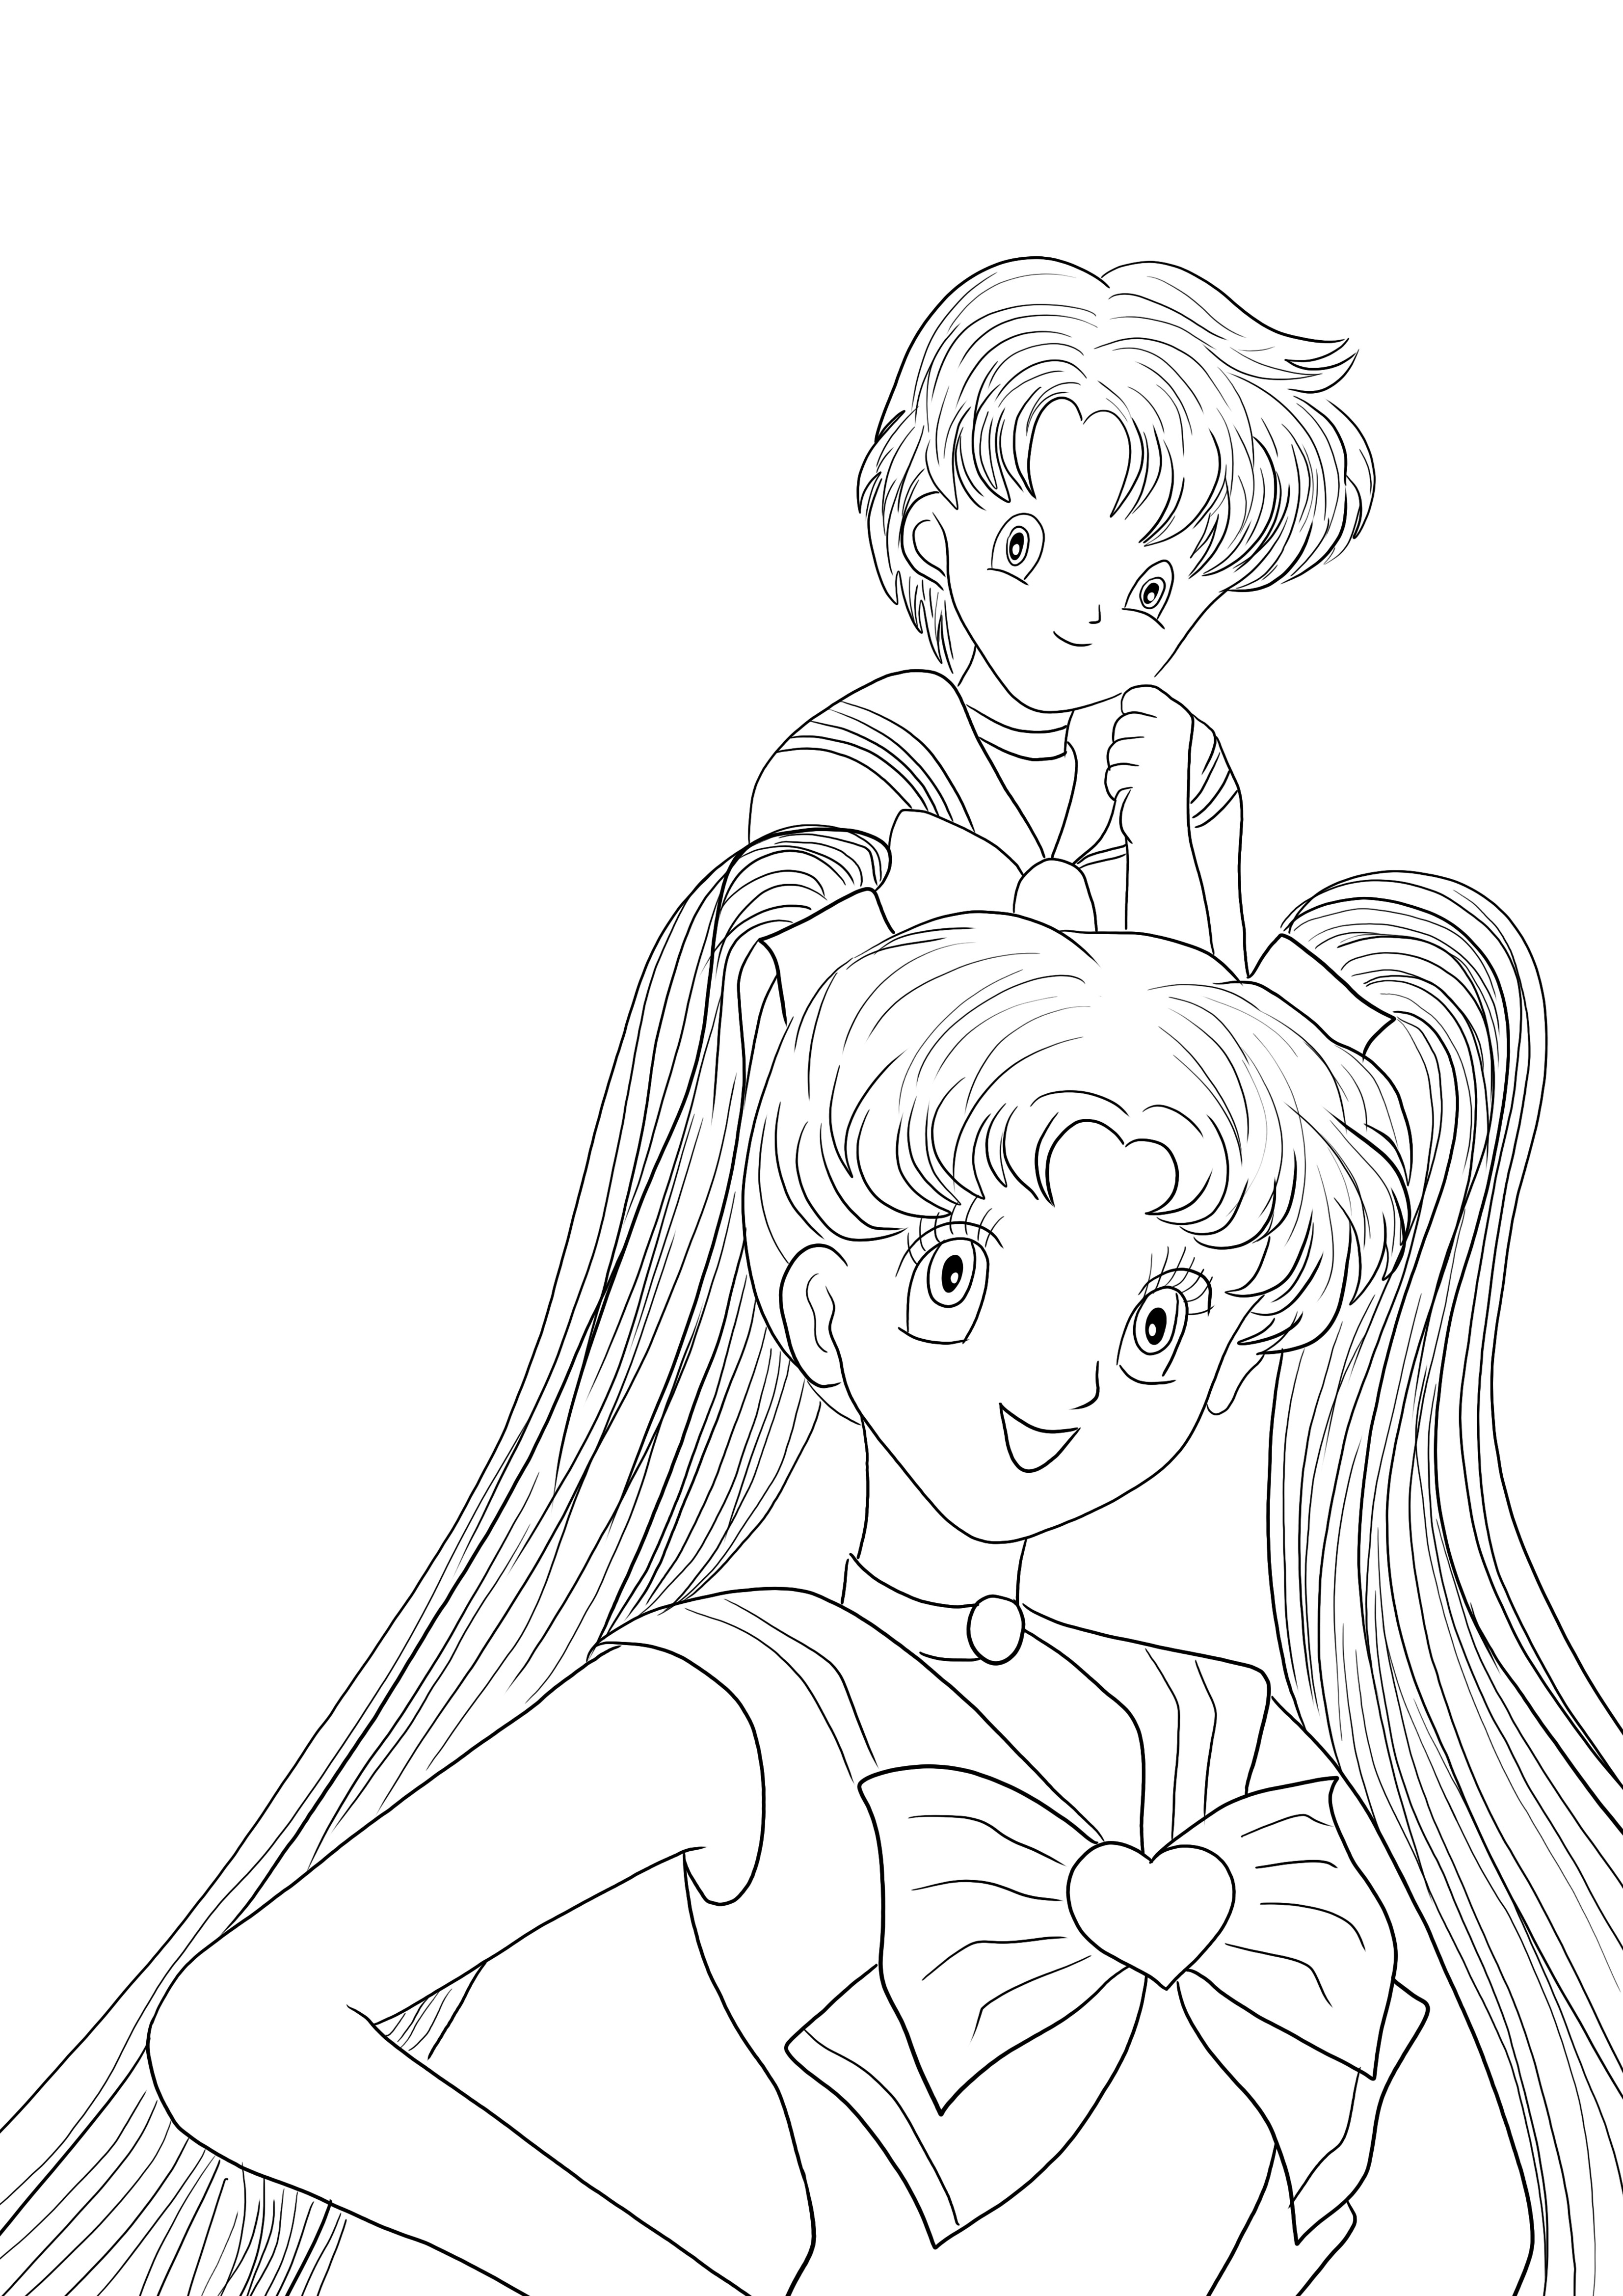 Hier ist ein kostenloses Malblatt für Sailor Moon Girls zum Ausmalen für Kinder